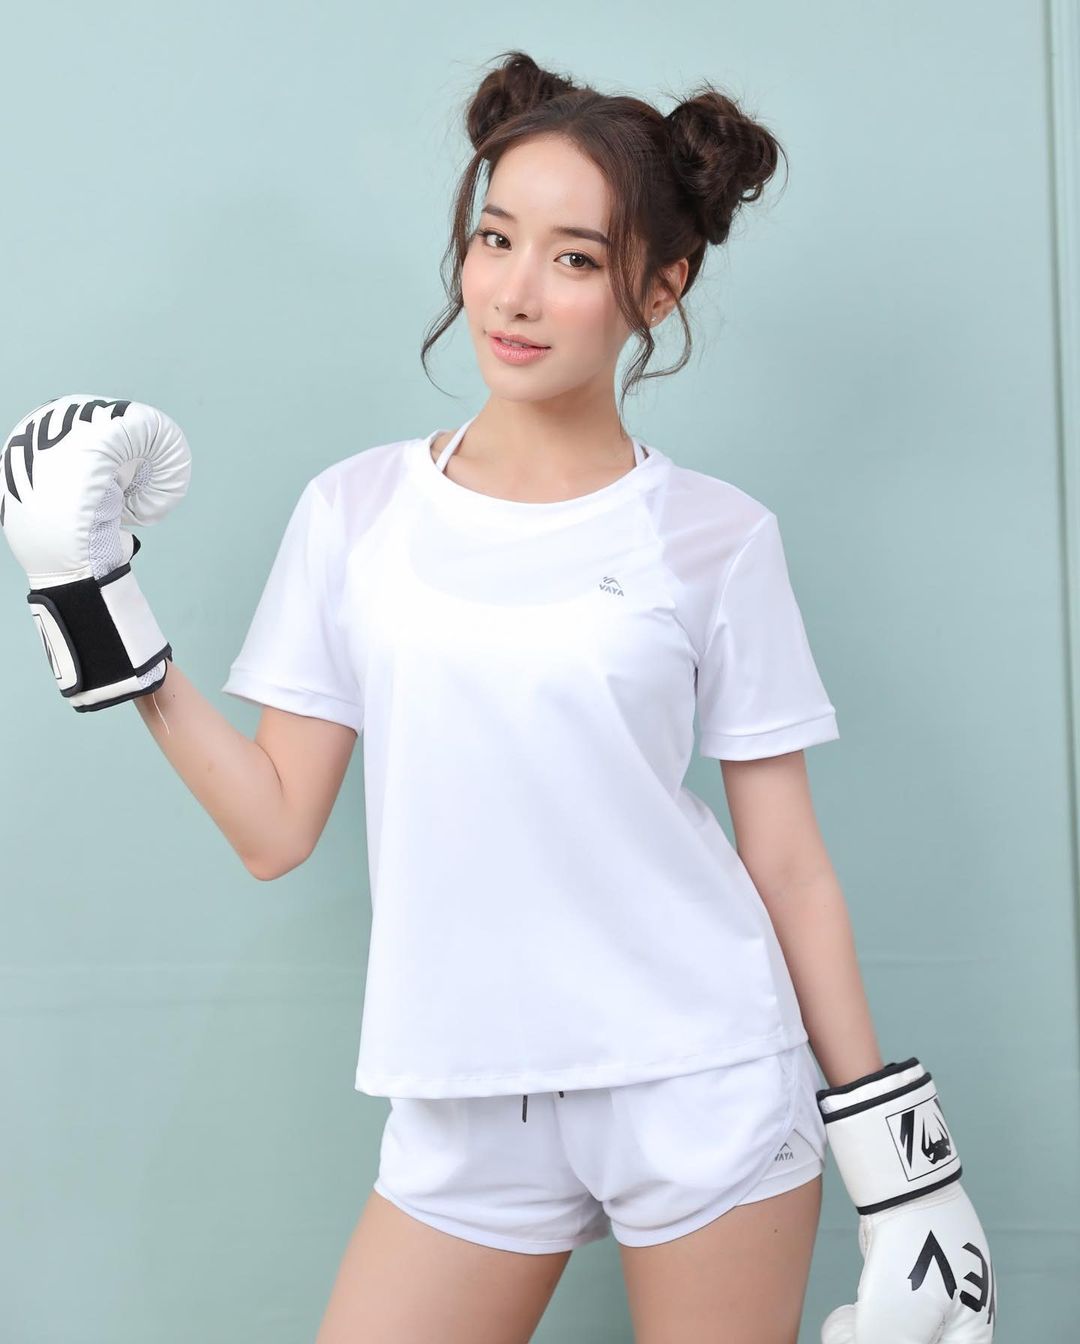 Jessica t-shirt - Sport top